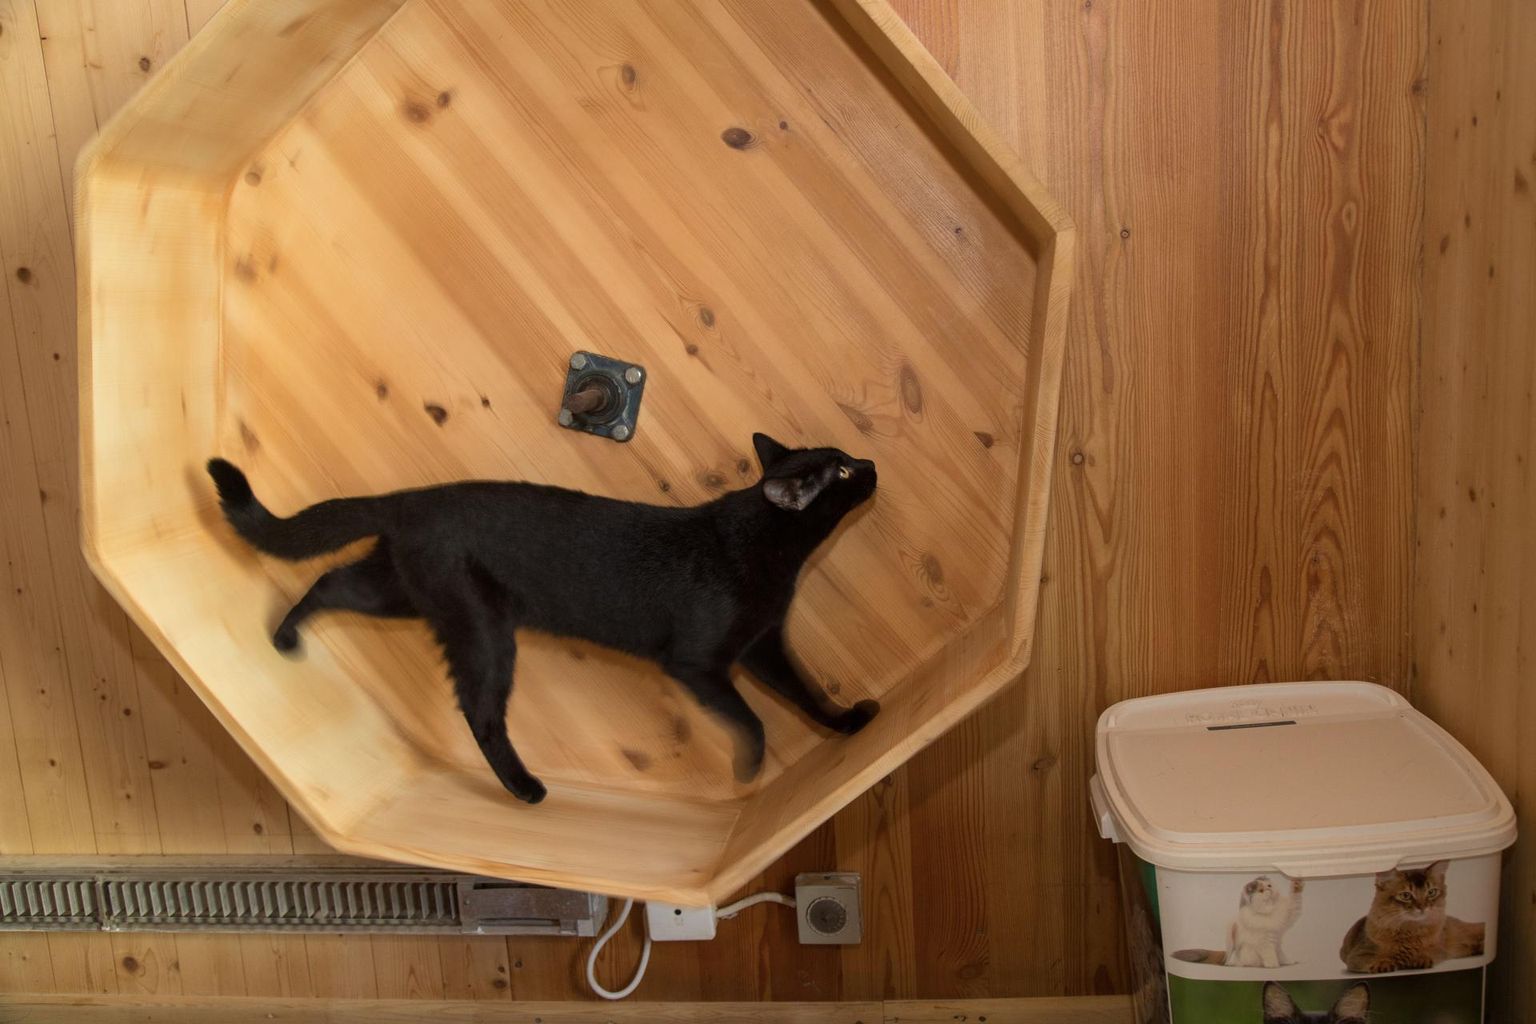 Musta kassi kuul on uue kodu leidnud pea 30 kassi.